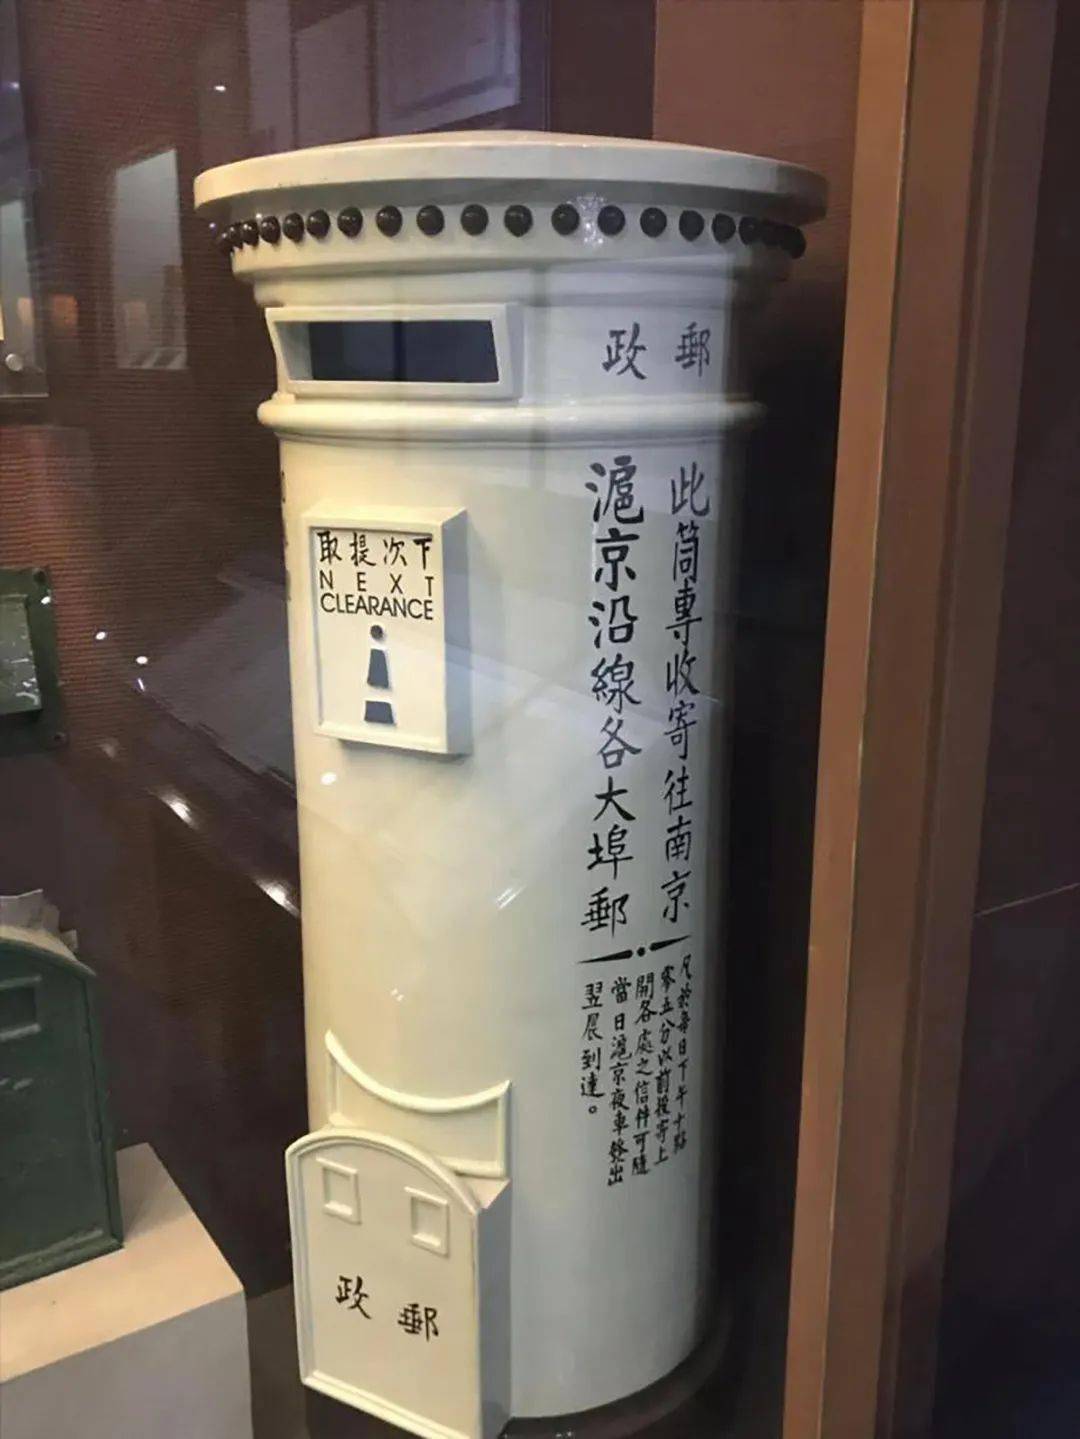 阅读苏河丨上海邮政博物馆:见证百年邮政业发展,留存珍贵城市记忆